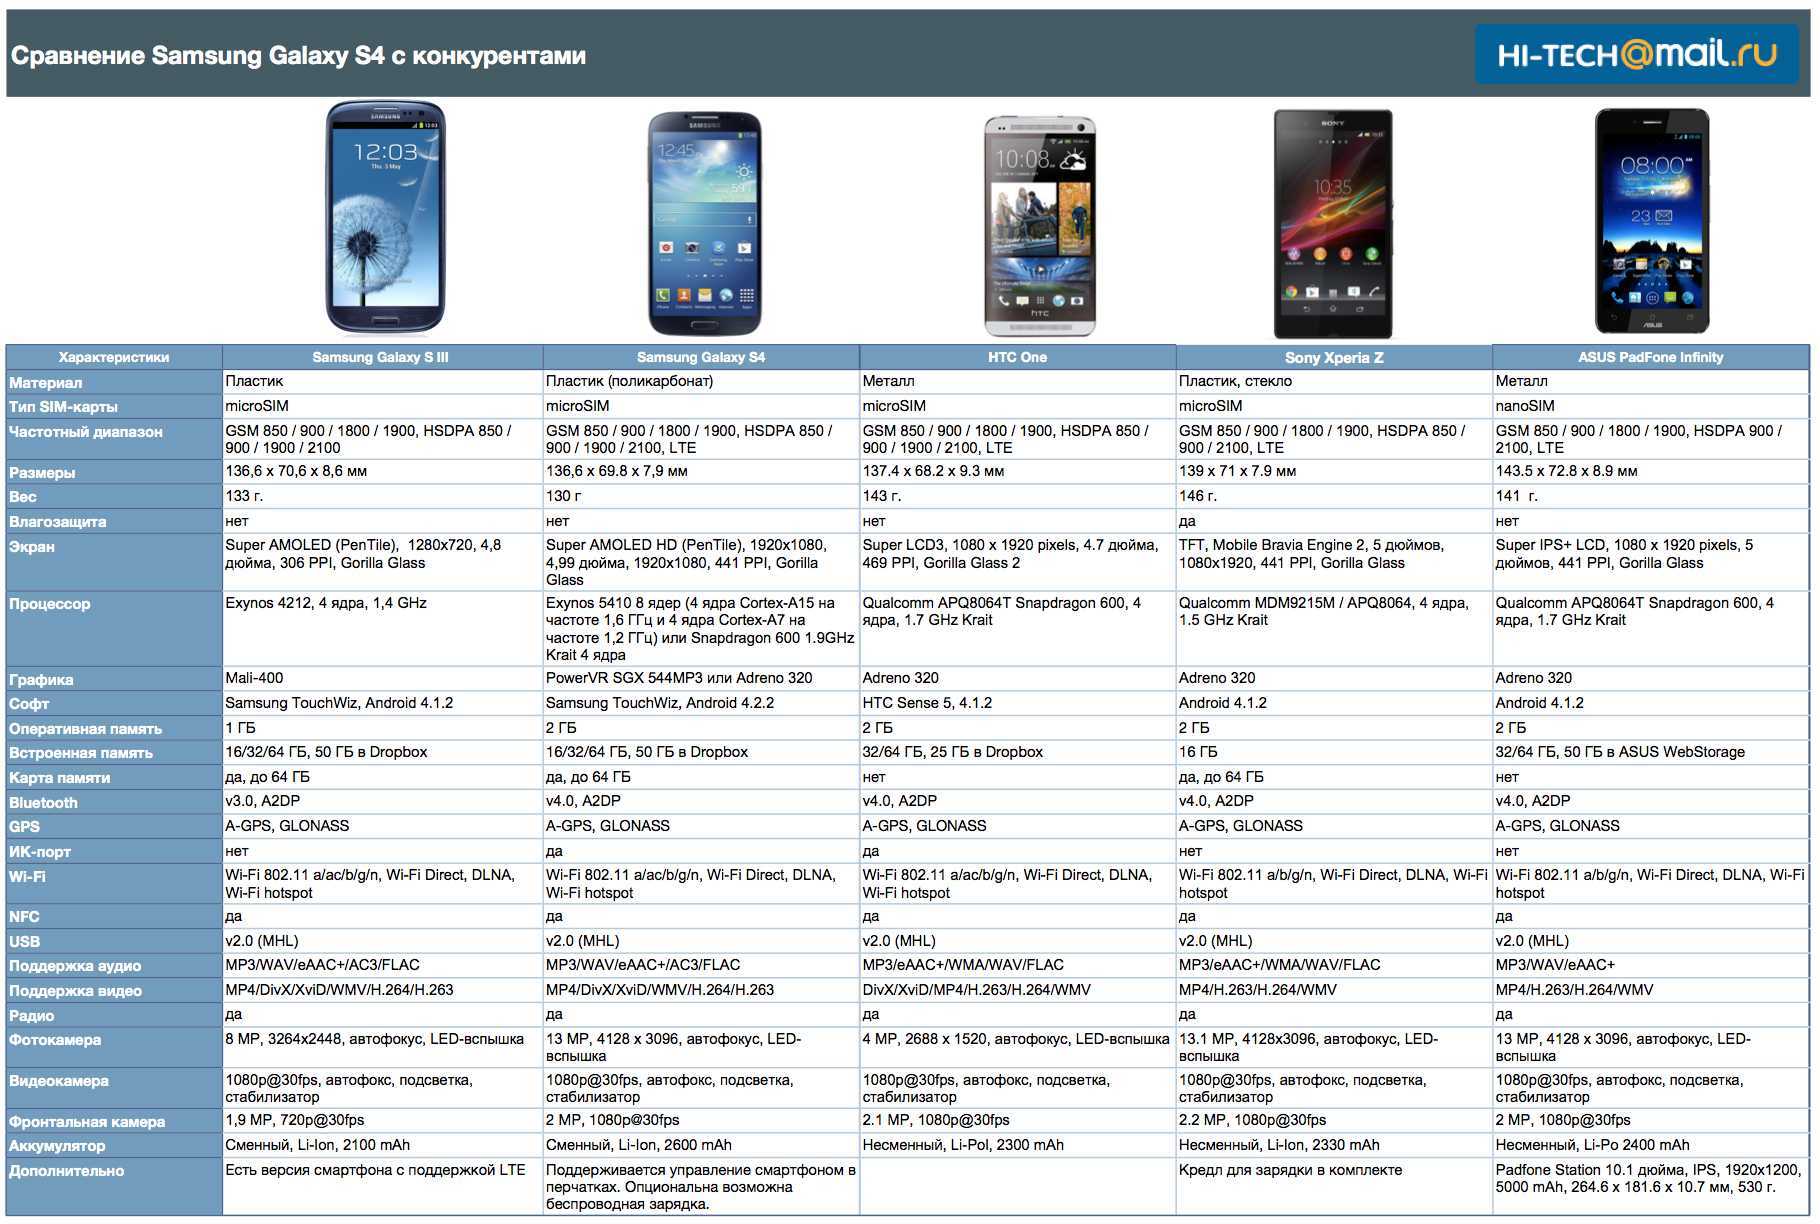 Как растёт мощность каждого нового iphone по сравнению со старым. iphone 13 лучше не сравнивать